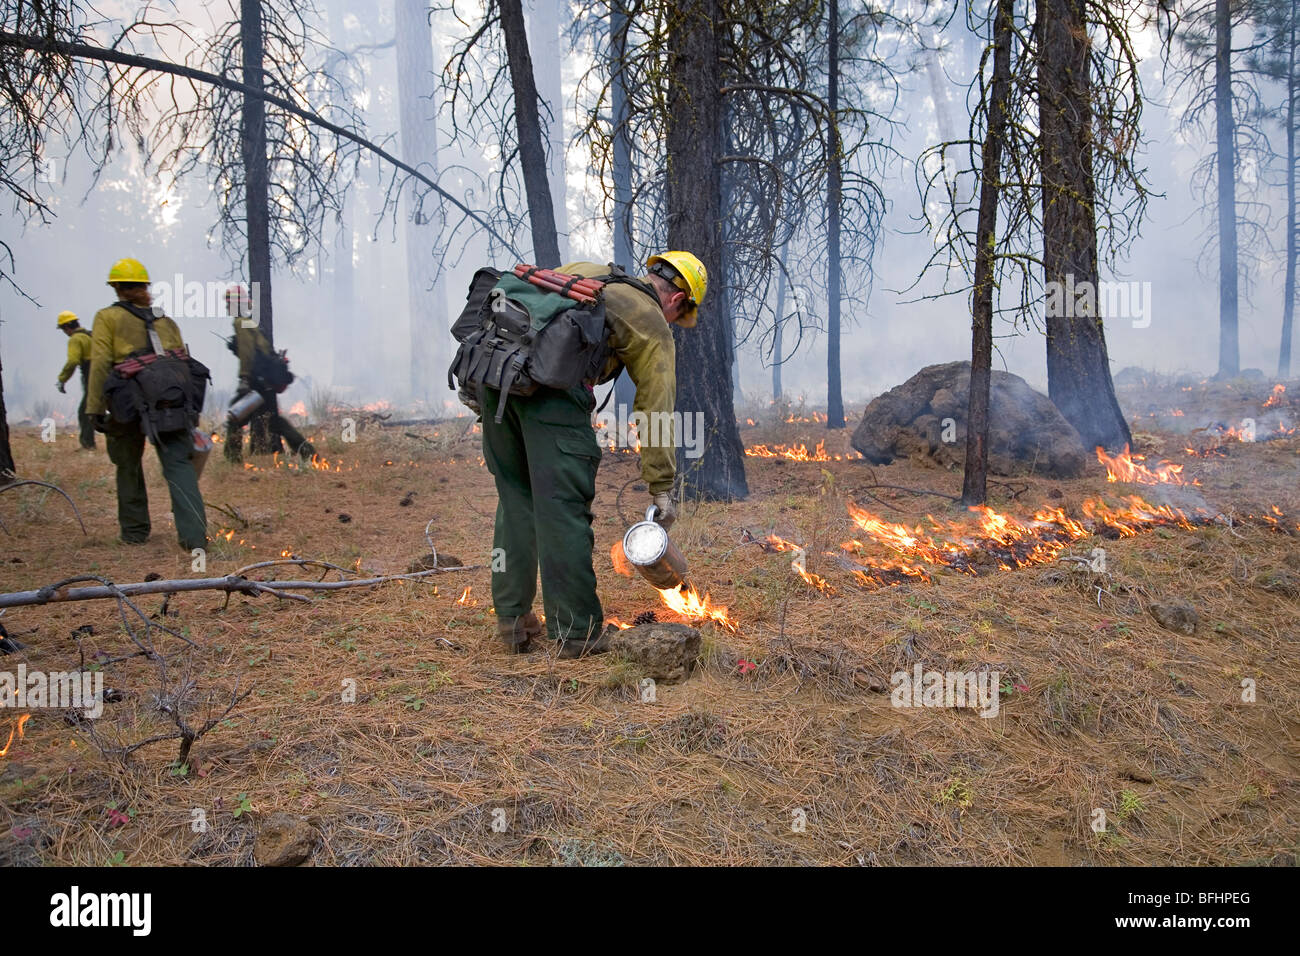 El Servicio Forestal de los Estados Unidos equipos de lucha contra incendios ayudan a controlar una quema controlada o prescrita Foto de stock